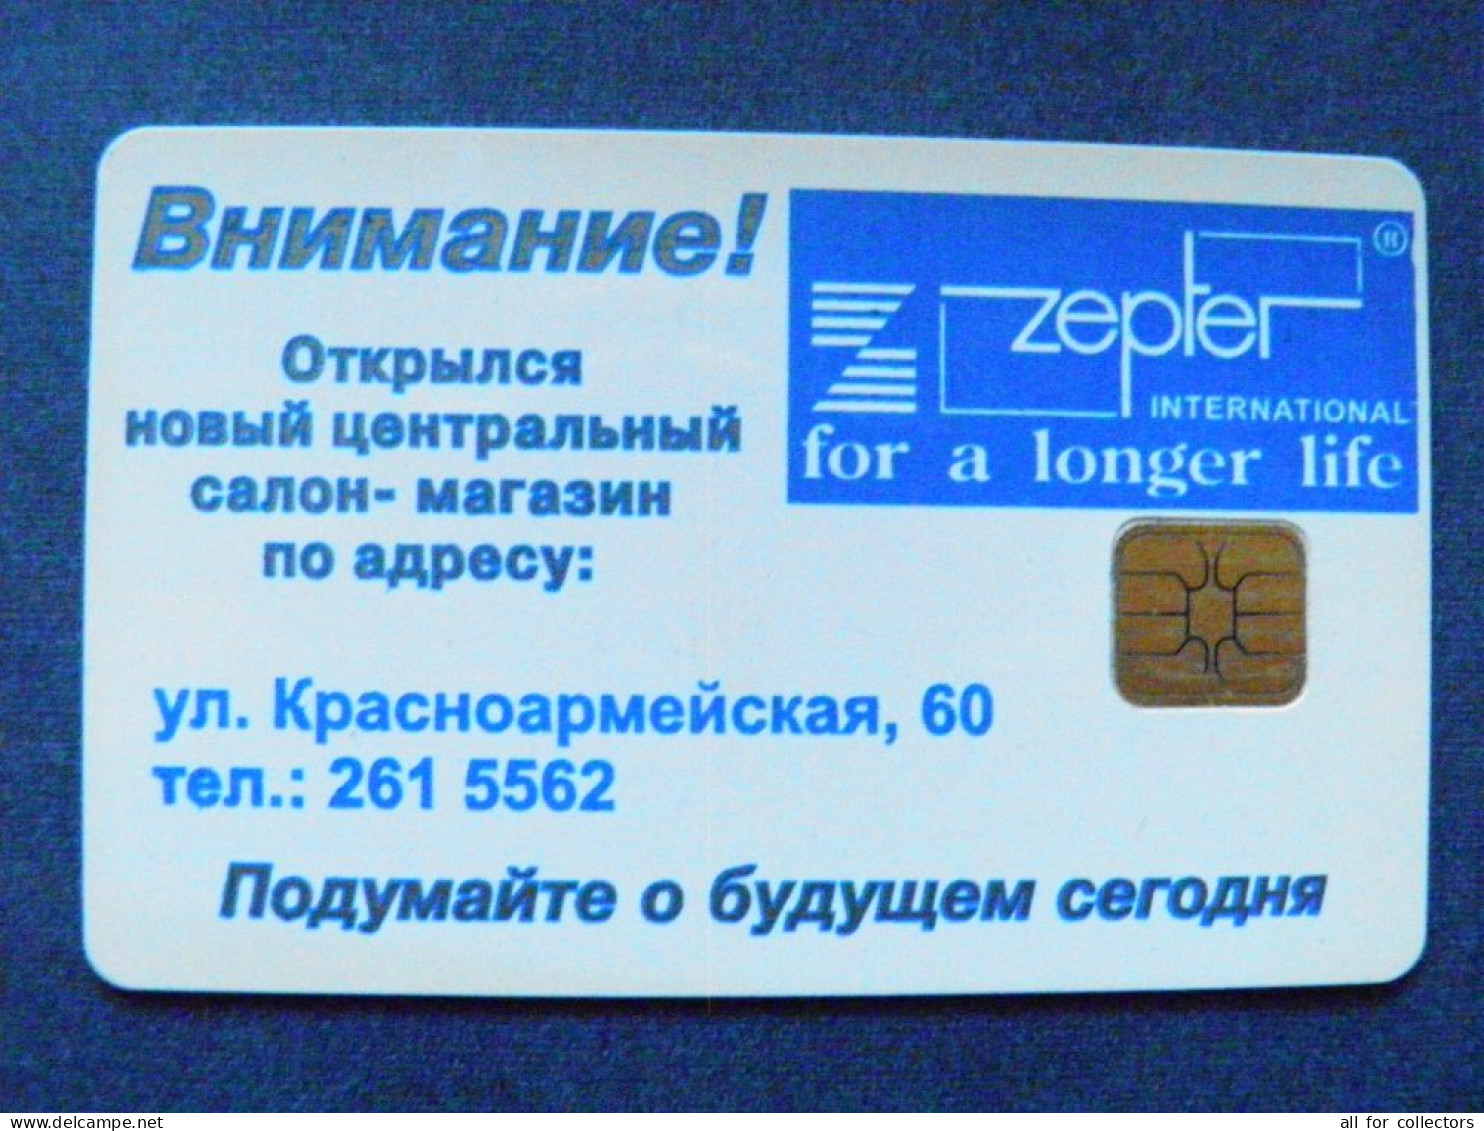 Phonecard Chip Advertising Zepter International For A Longer Life 840 Units UKRAINE Kyiv - Ukraine